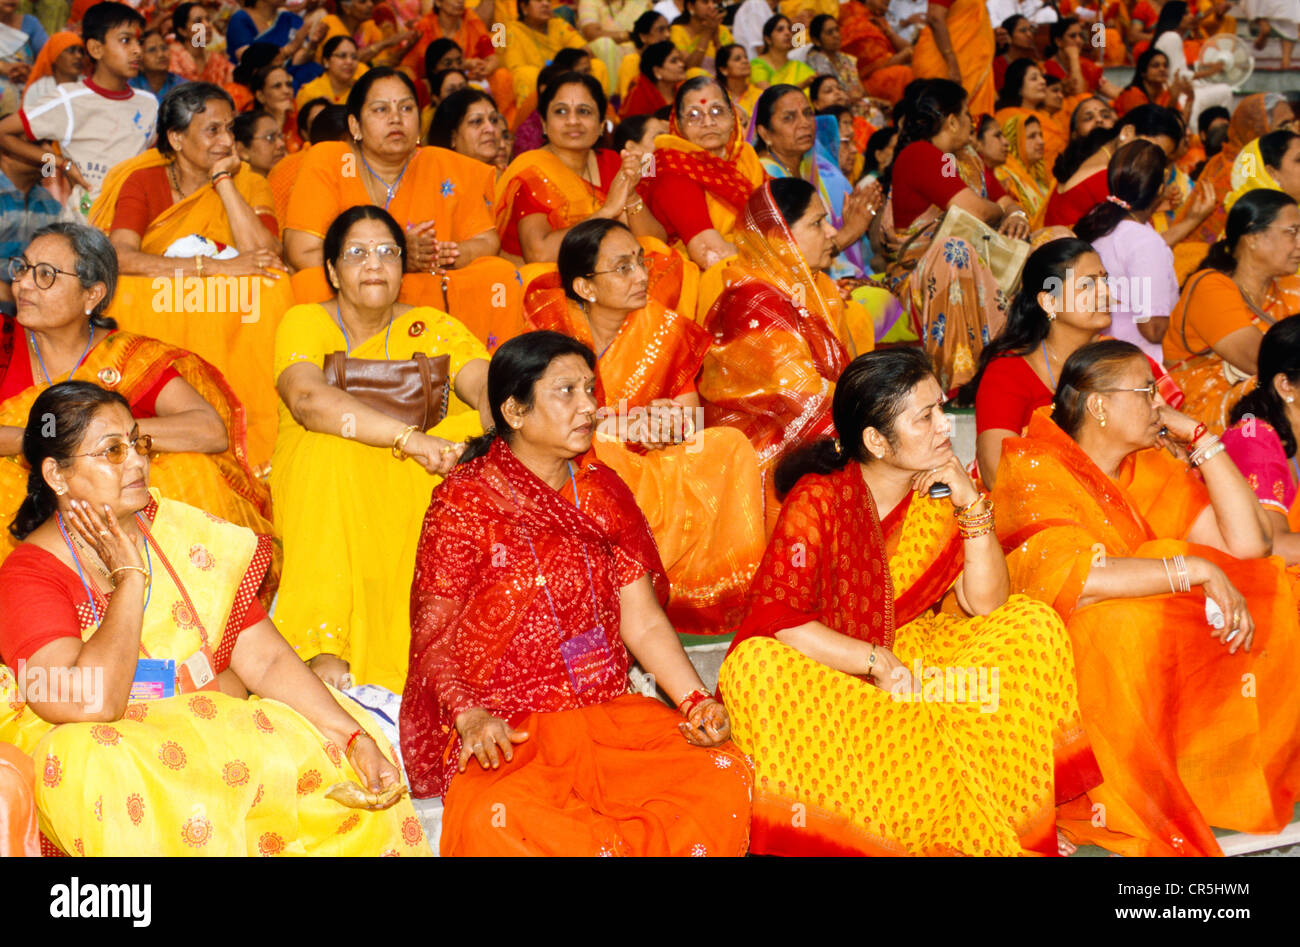 Un groupe de femmes de se joindre à la cérémonie à Aartii Ram Jhula à Rishikesh, Uttarakhand, anciennement l'Uttaranchal, Inde, Asie Banque D'Images